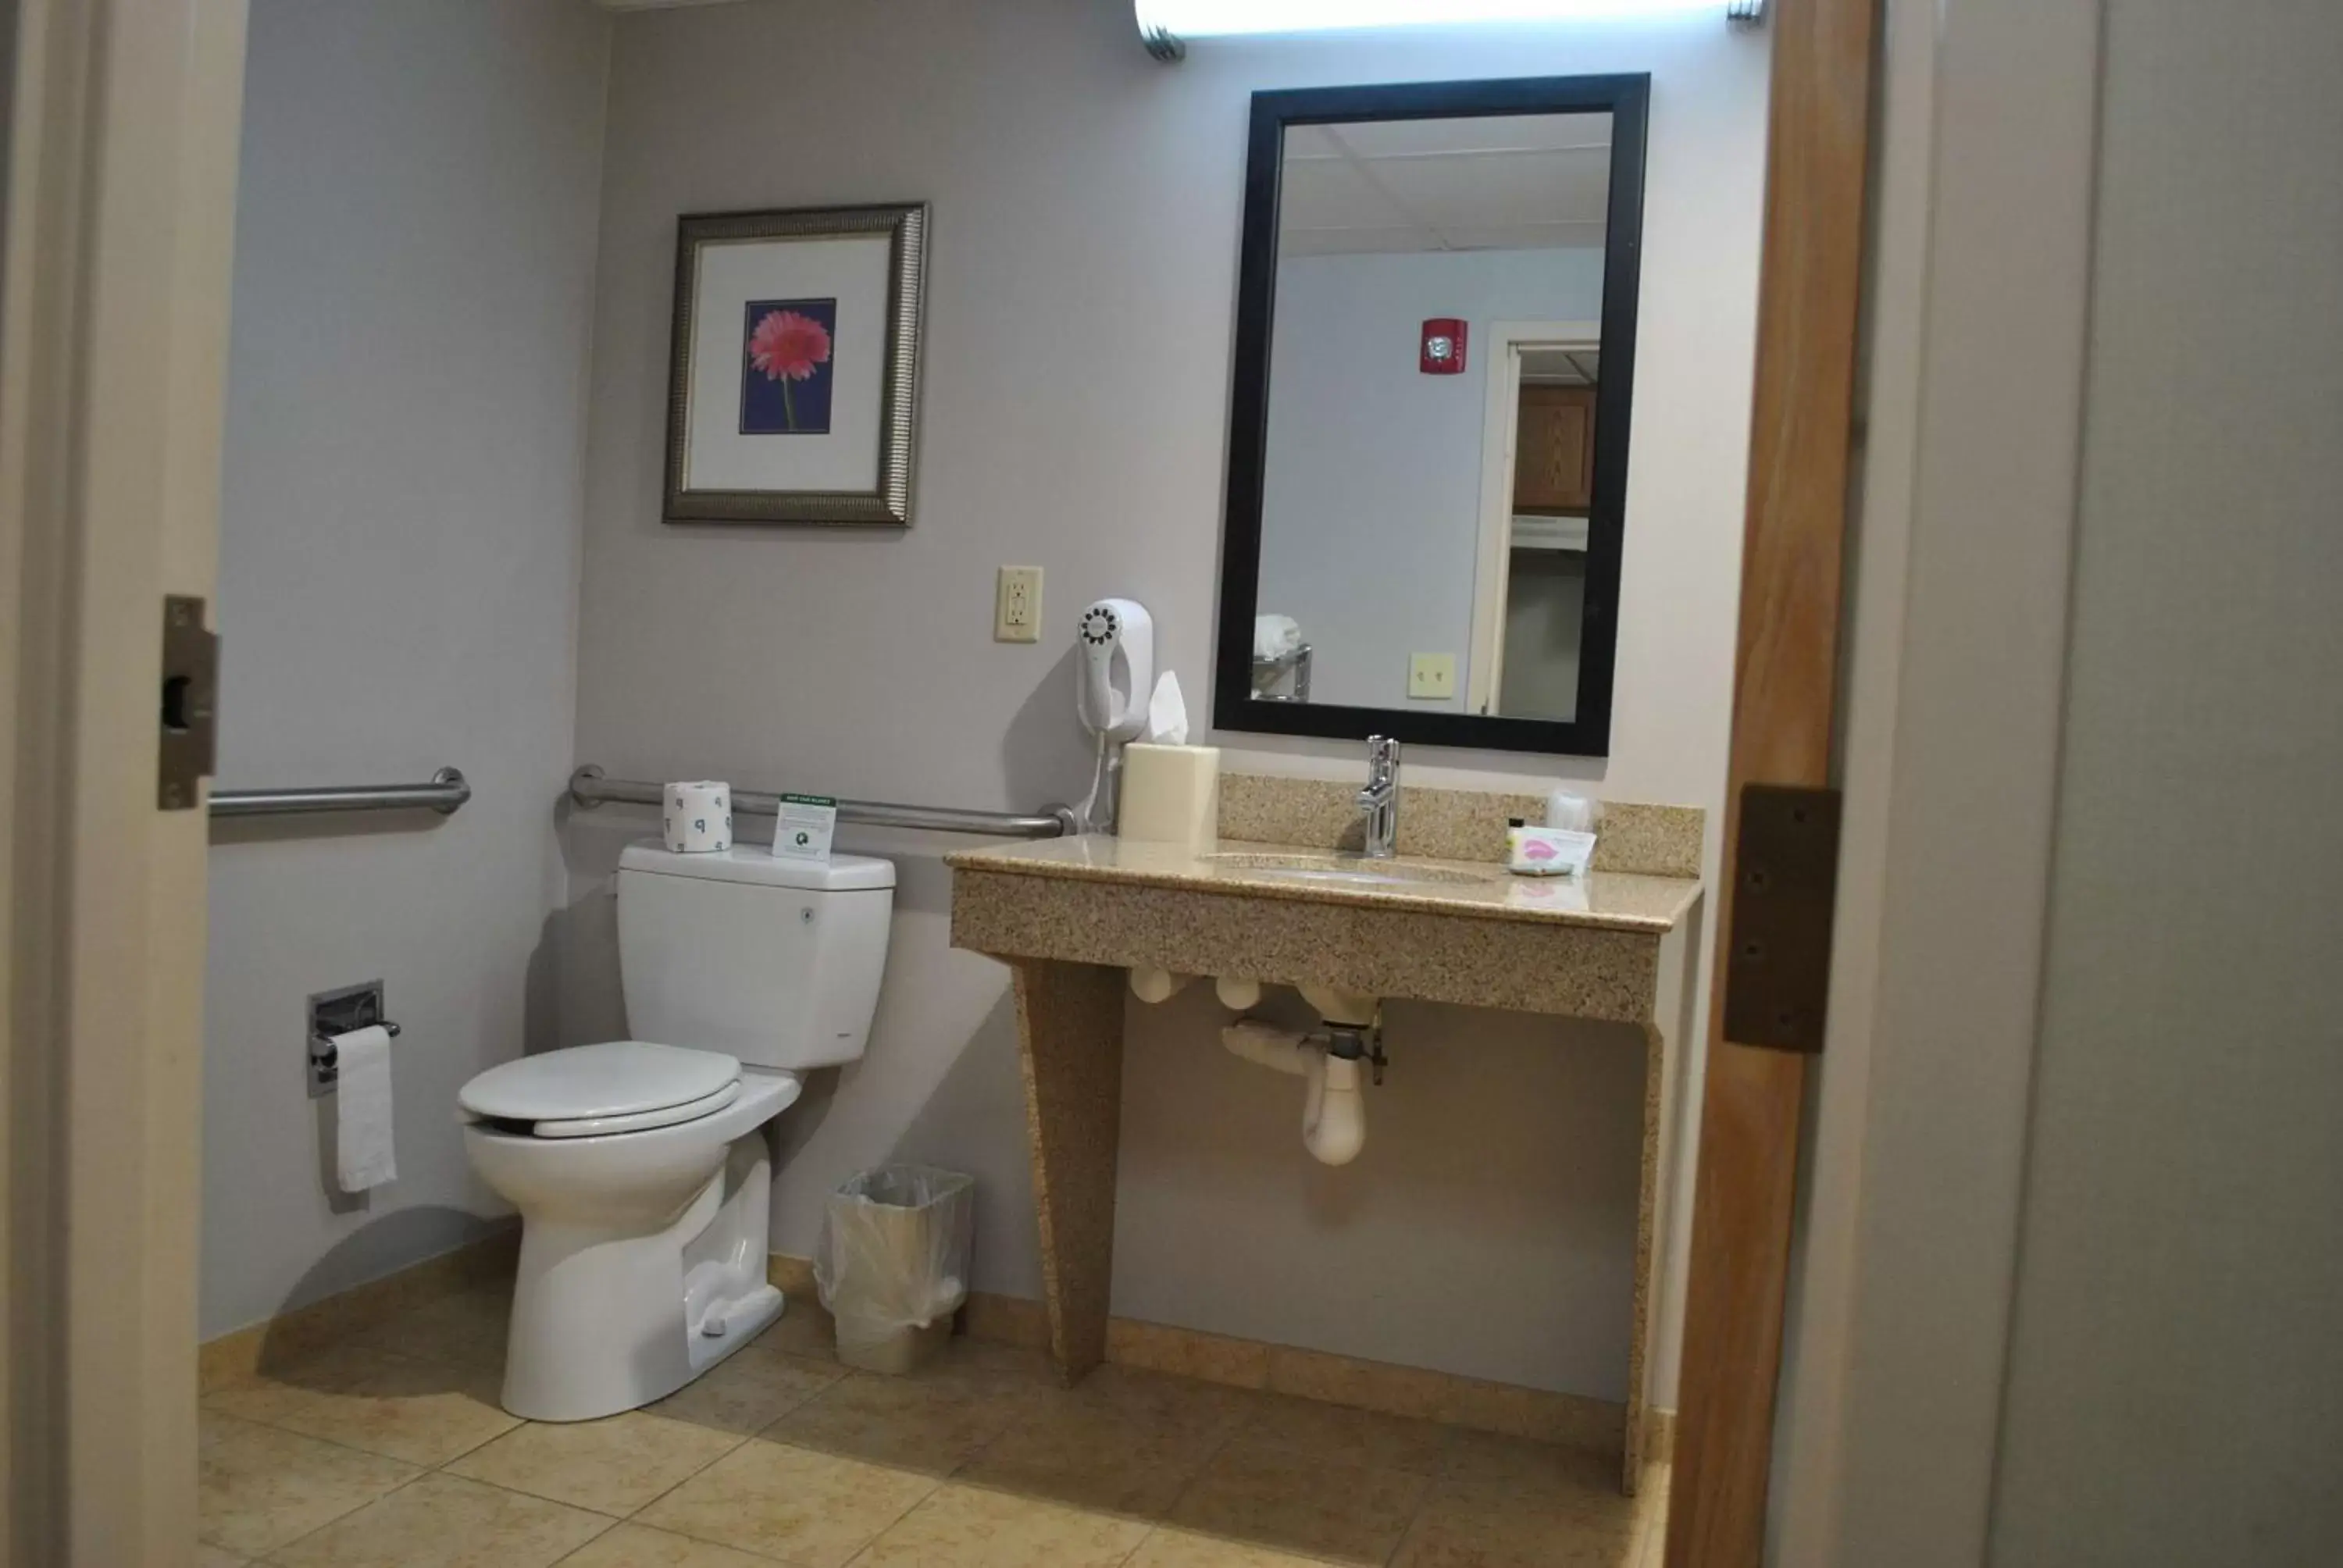 Bathroom in Best Western Owego Inn